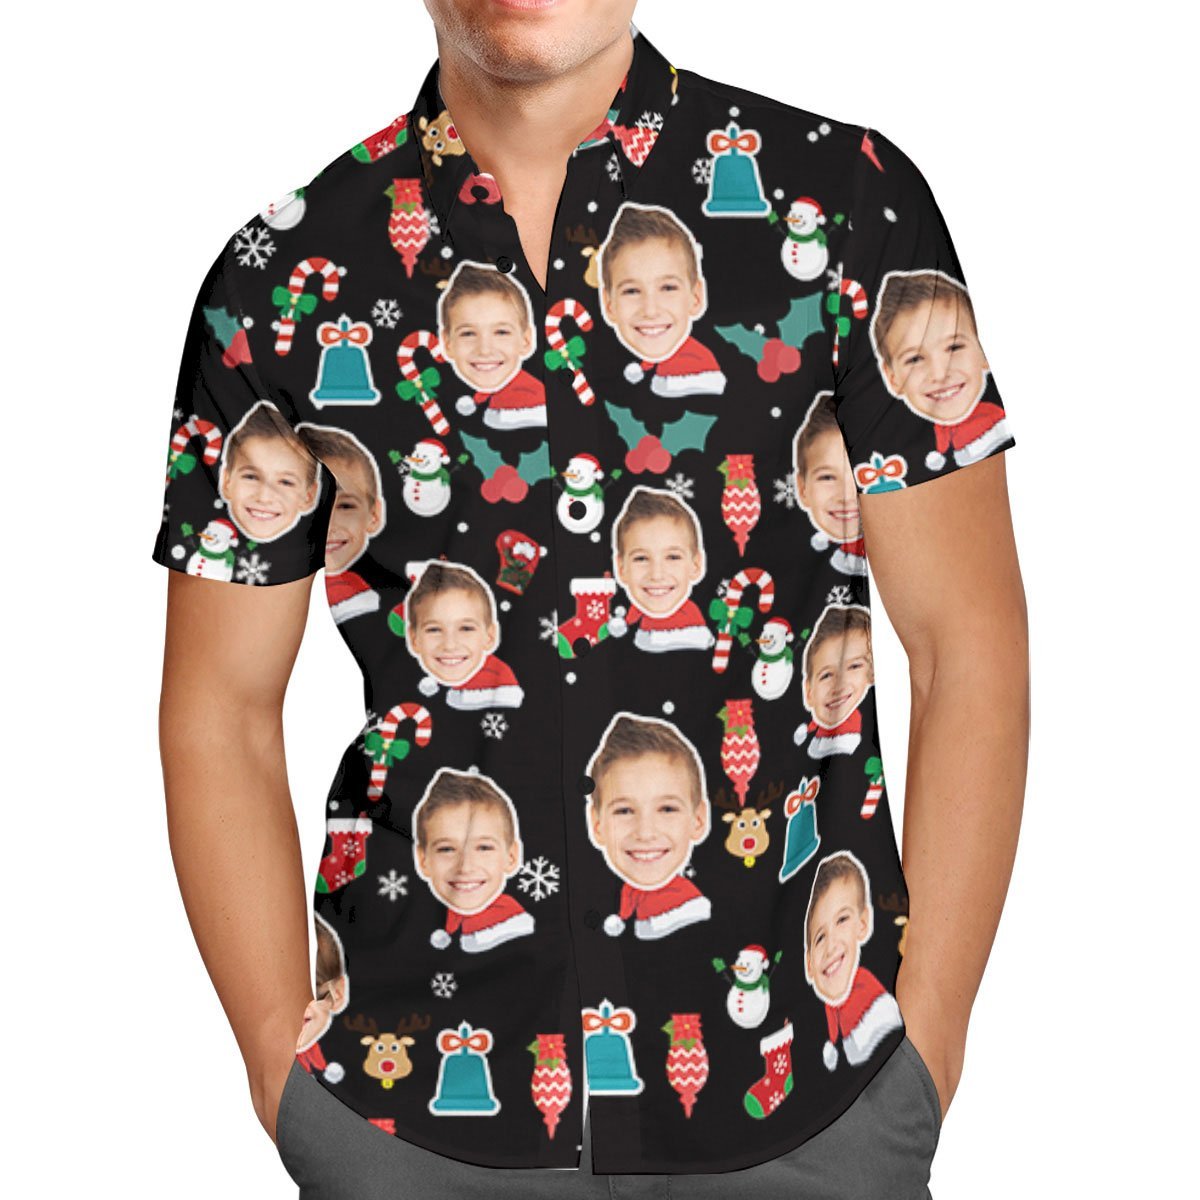 Kundenspezifisches Gesicht-personalisiertes Weihnachtshawaiianhemd-zuckerstange-weihnachtsfeiertags-geschenke - soufeelde